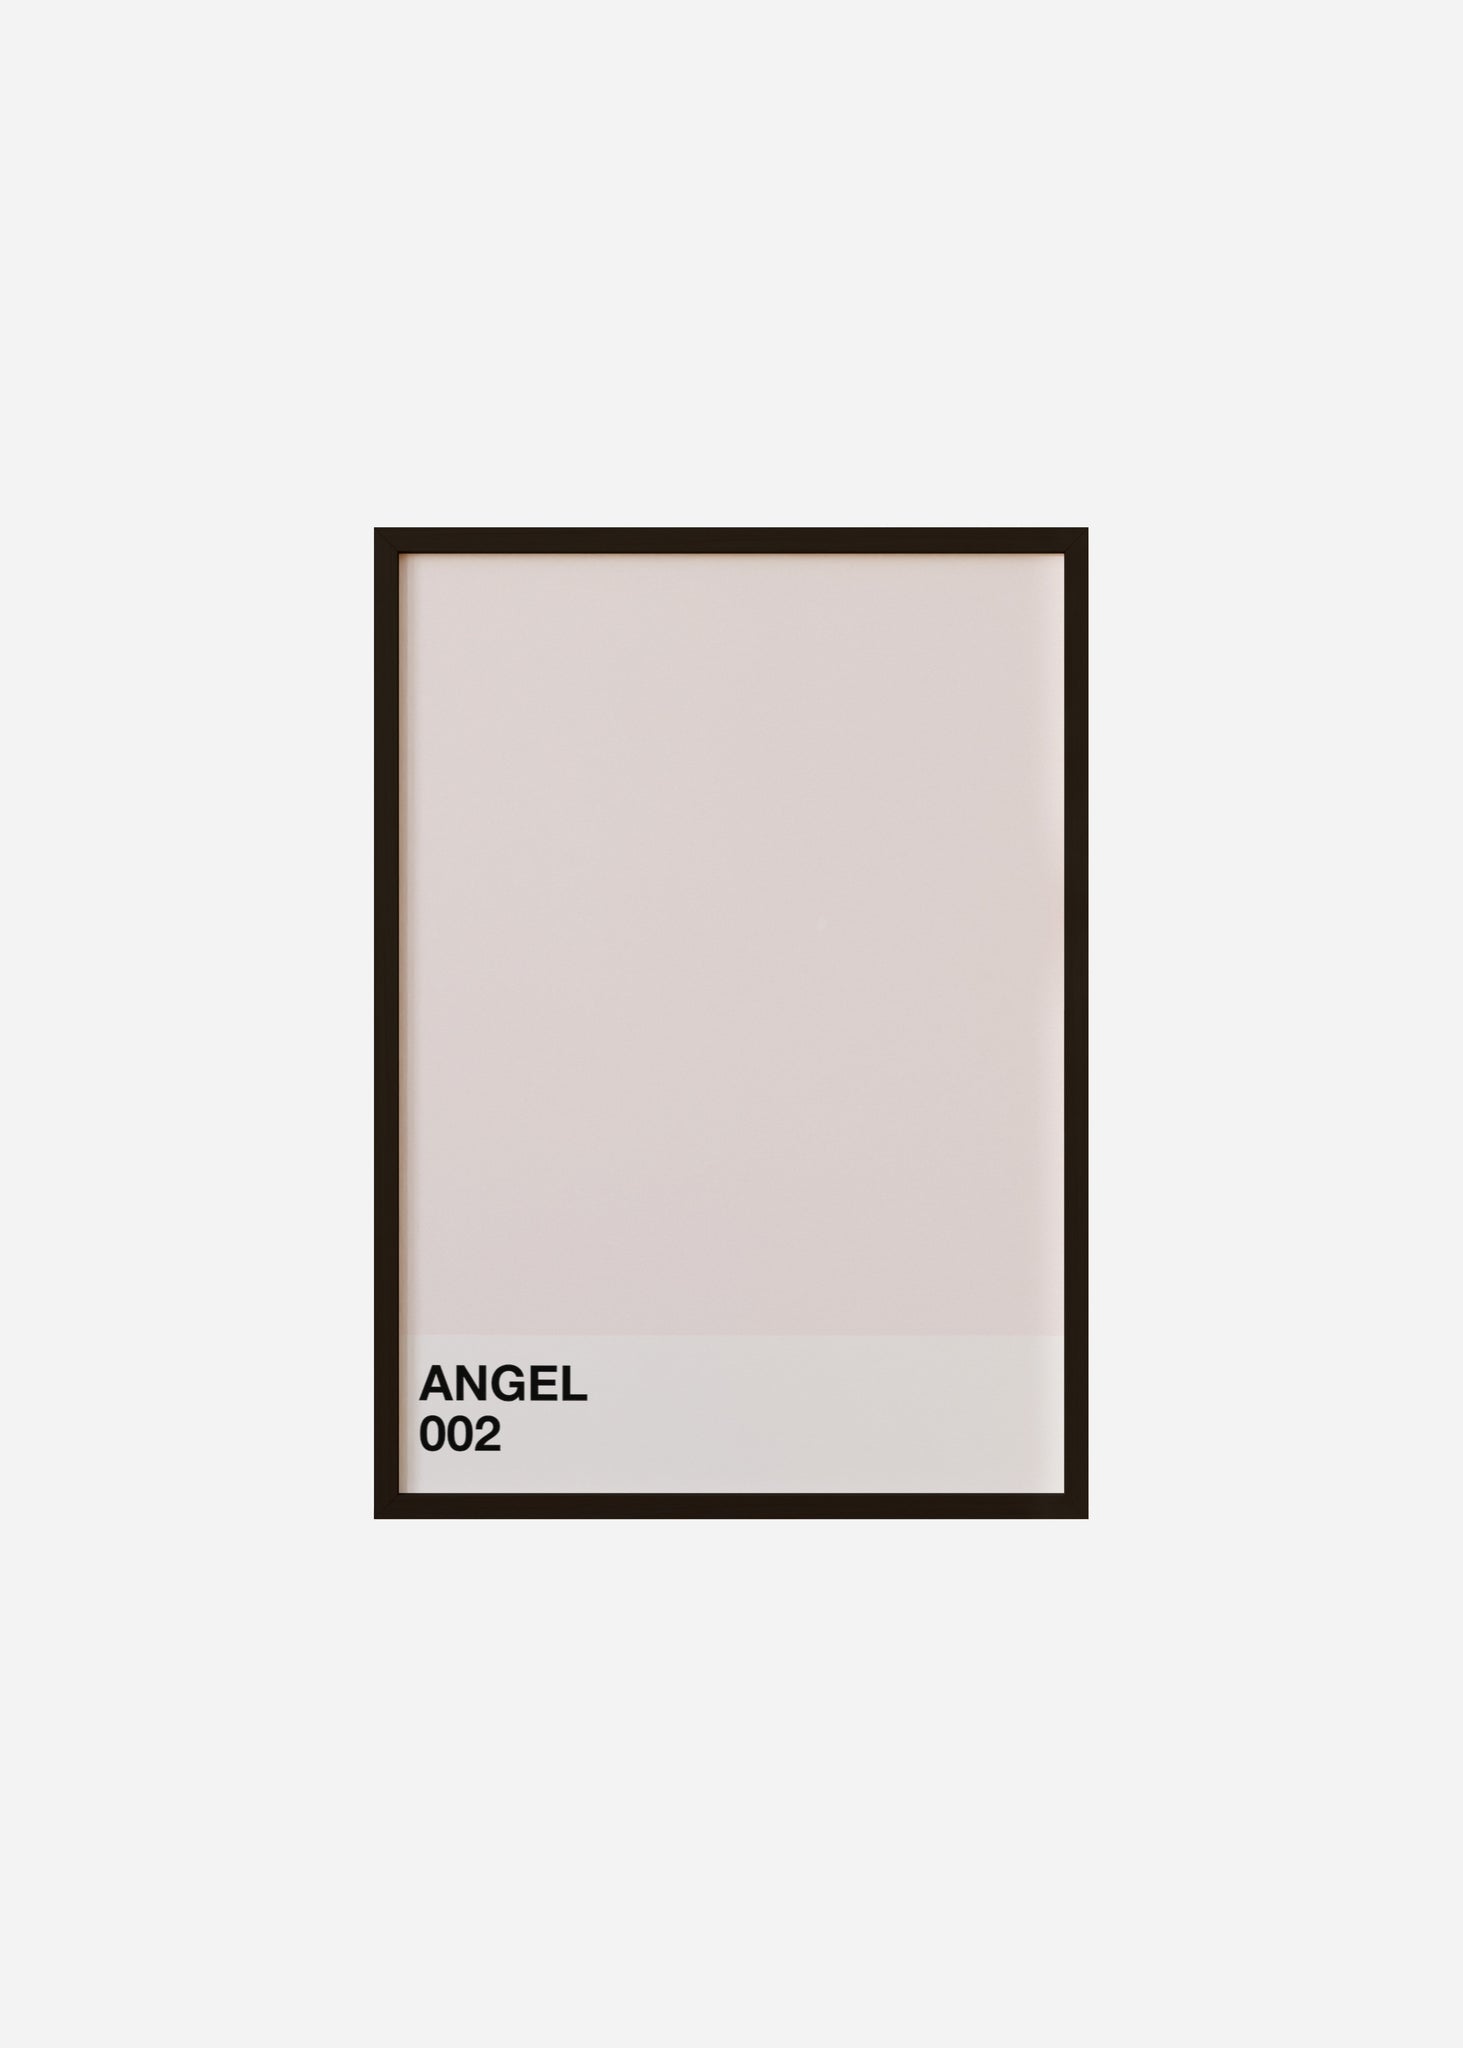 angel Framed Print